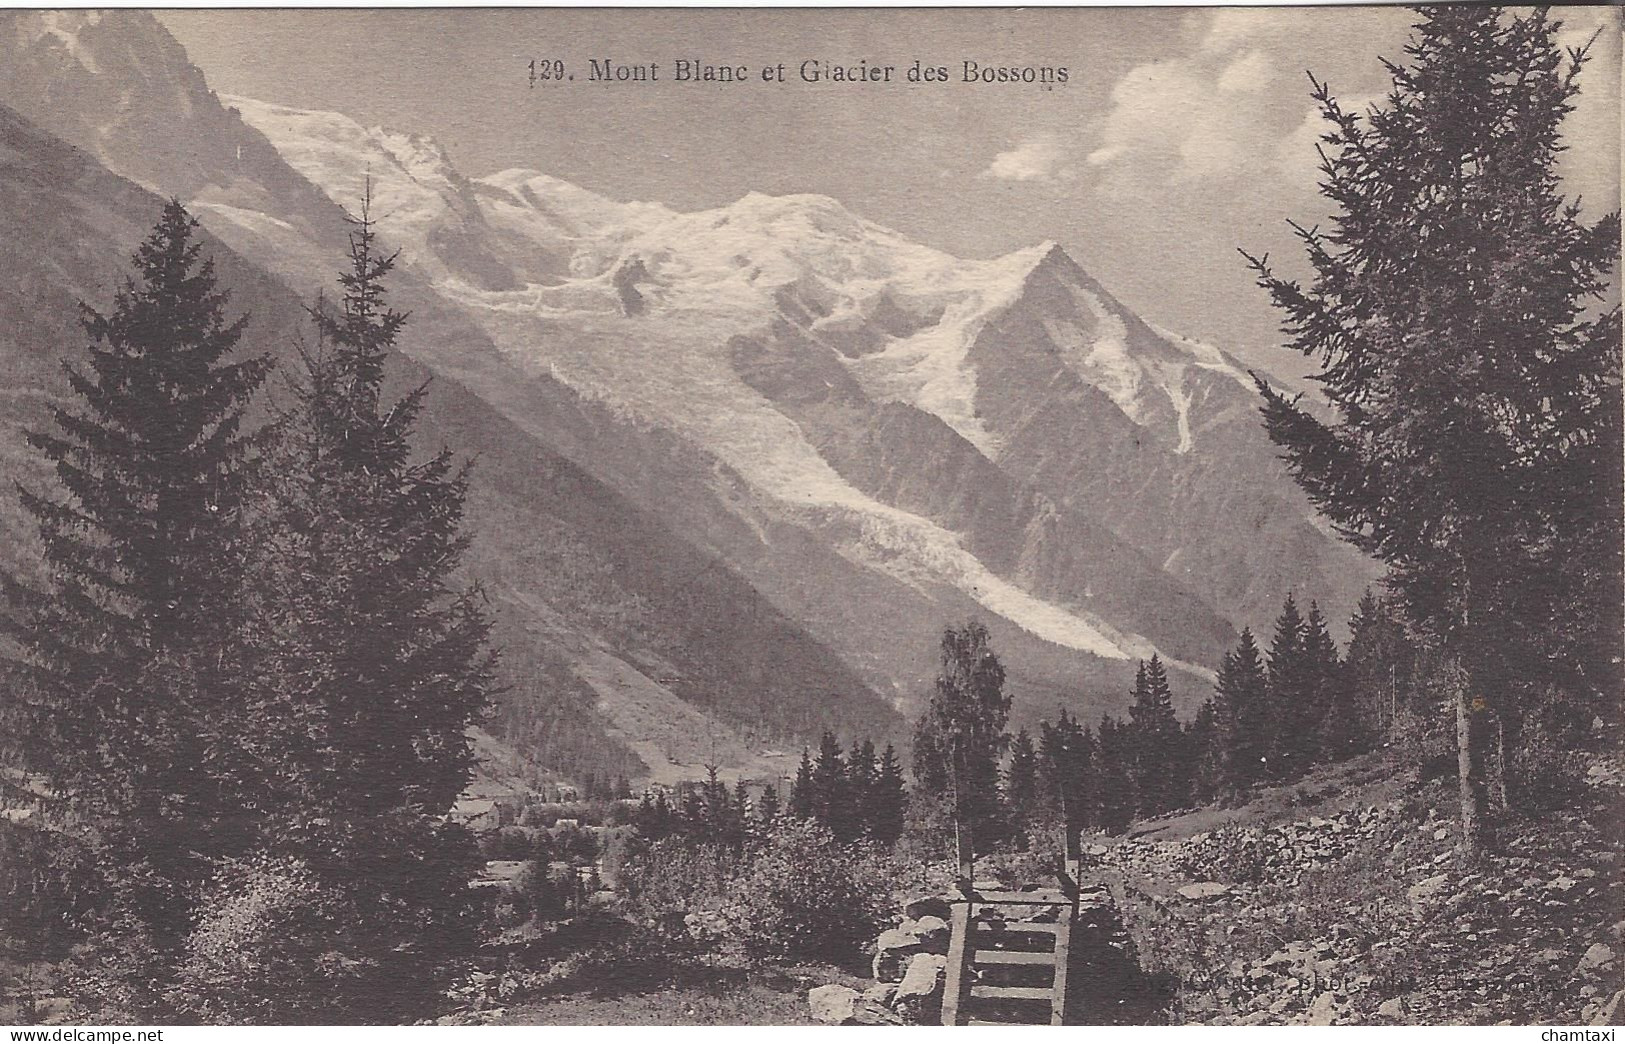 74 CHAMONIX MONT BLANC GLACIER DES BOSSONS MASSIF DU MONT BLANC  Editeur COUTTET  Auguste N° 129 - Chamonix-Mont-Blanc